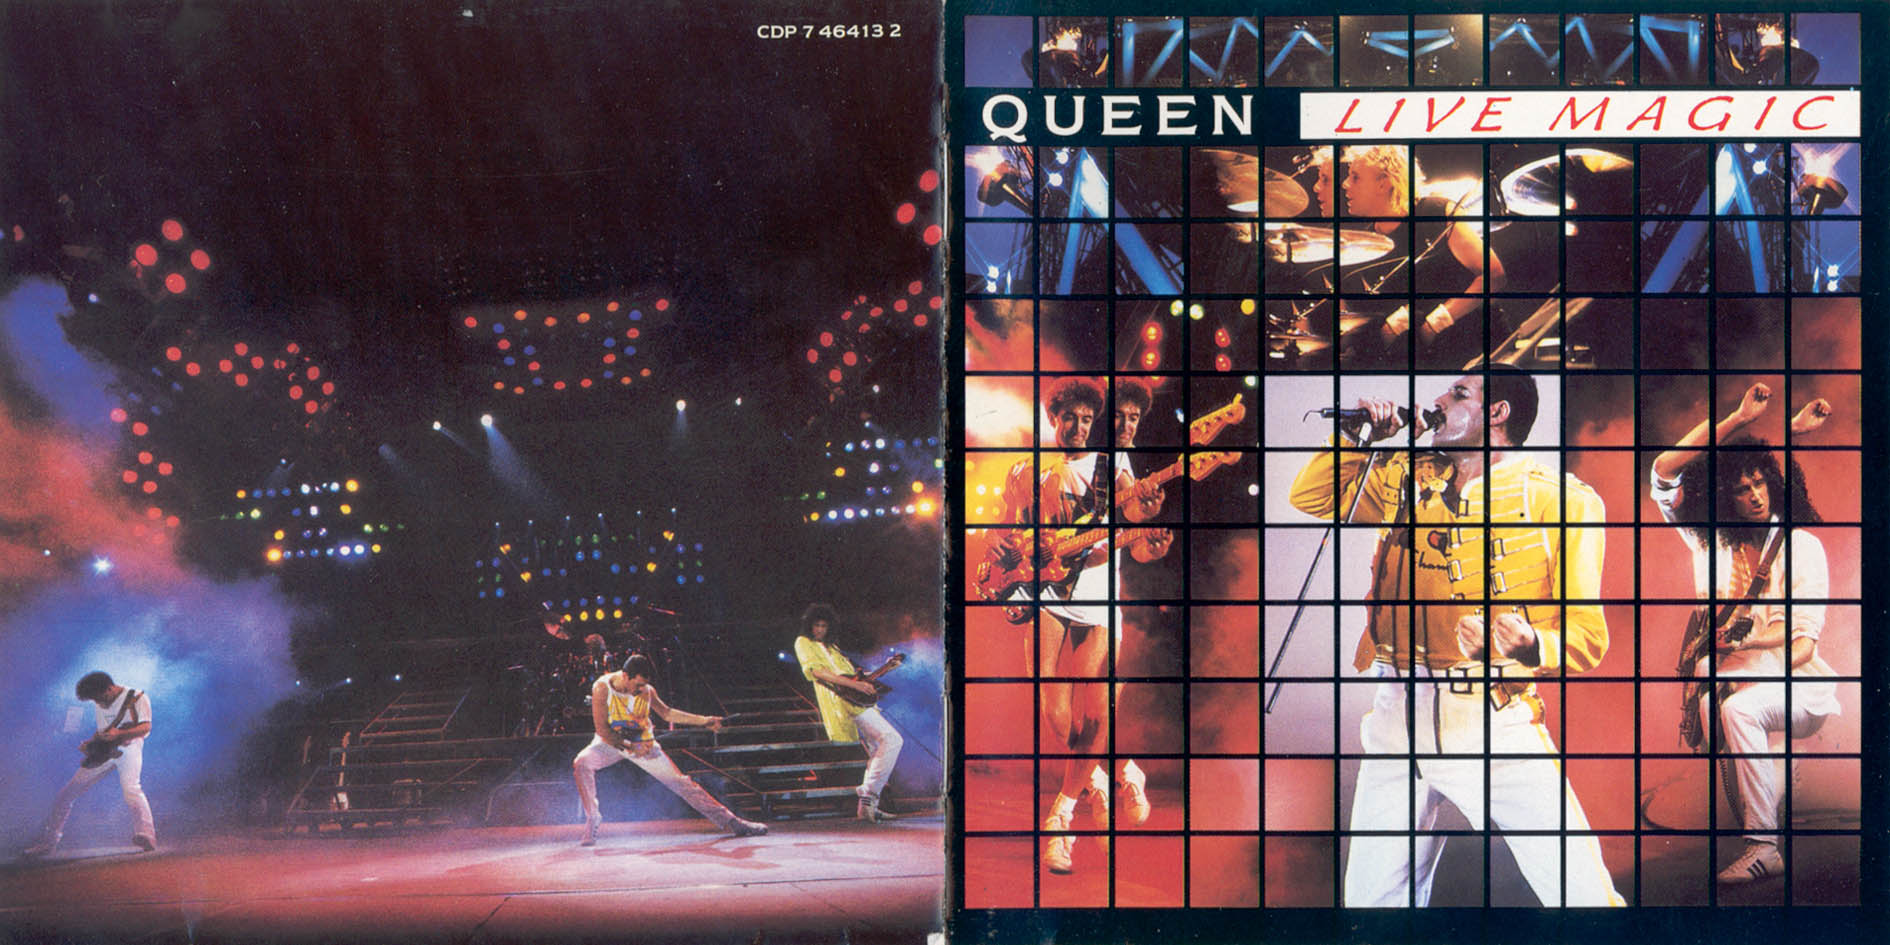 Queen - Live Magic 1986